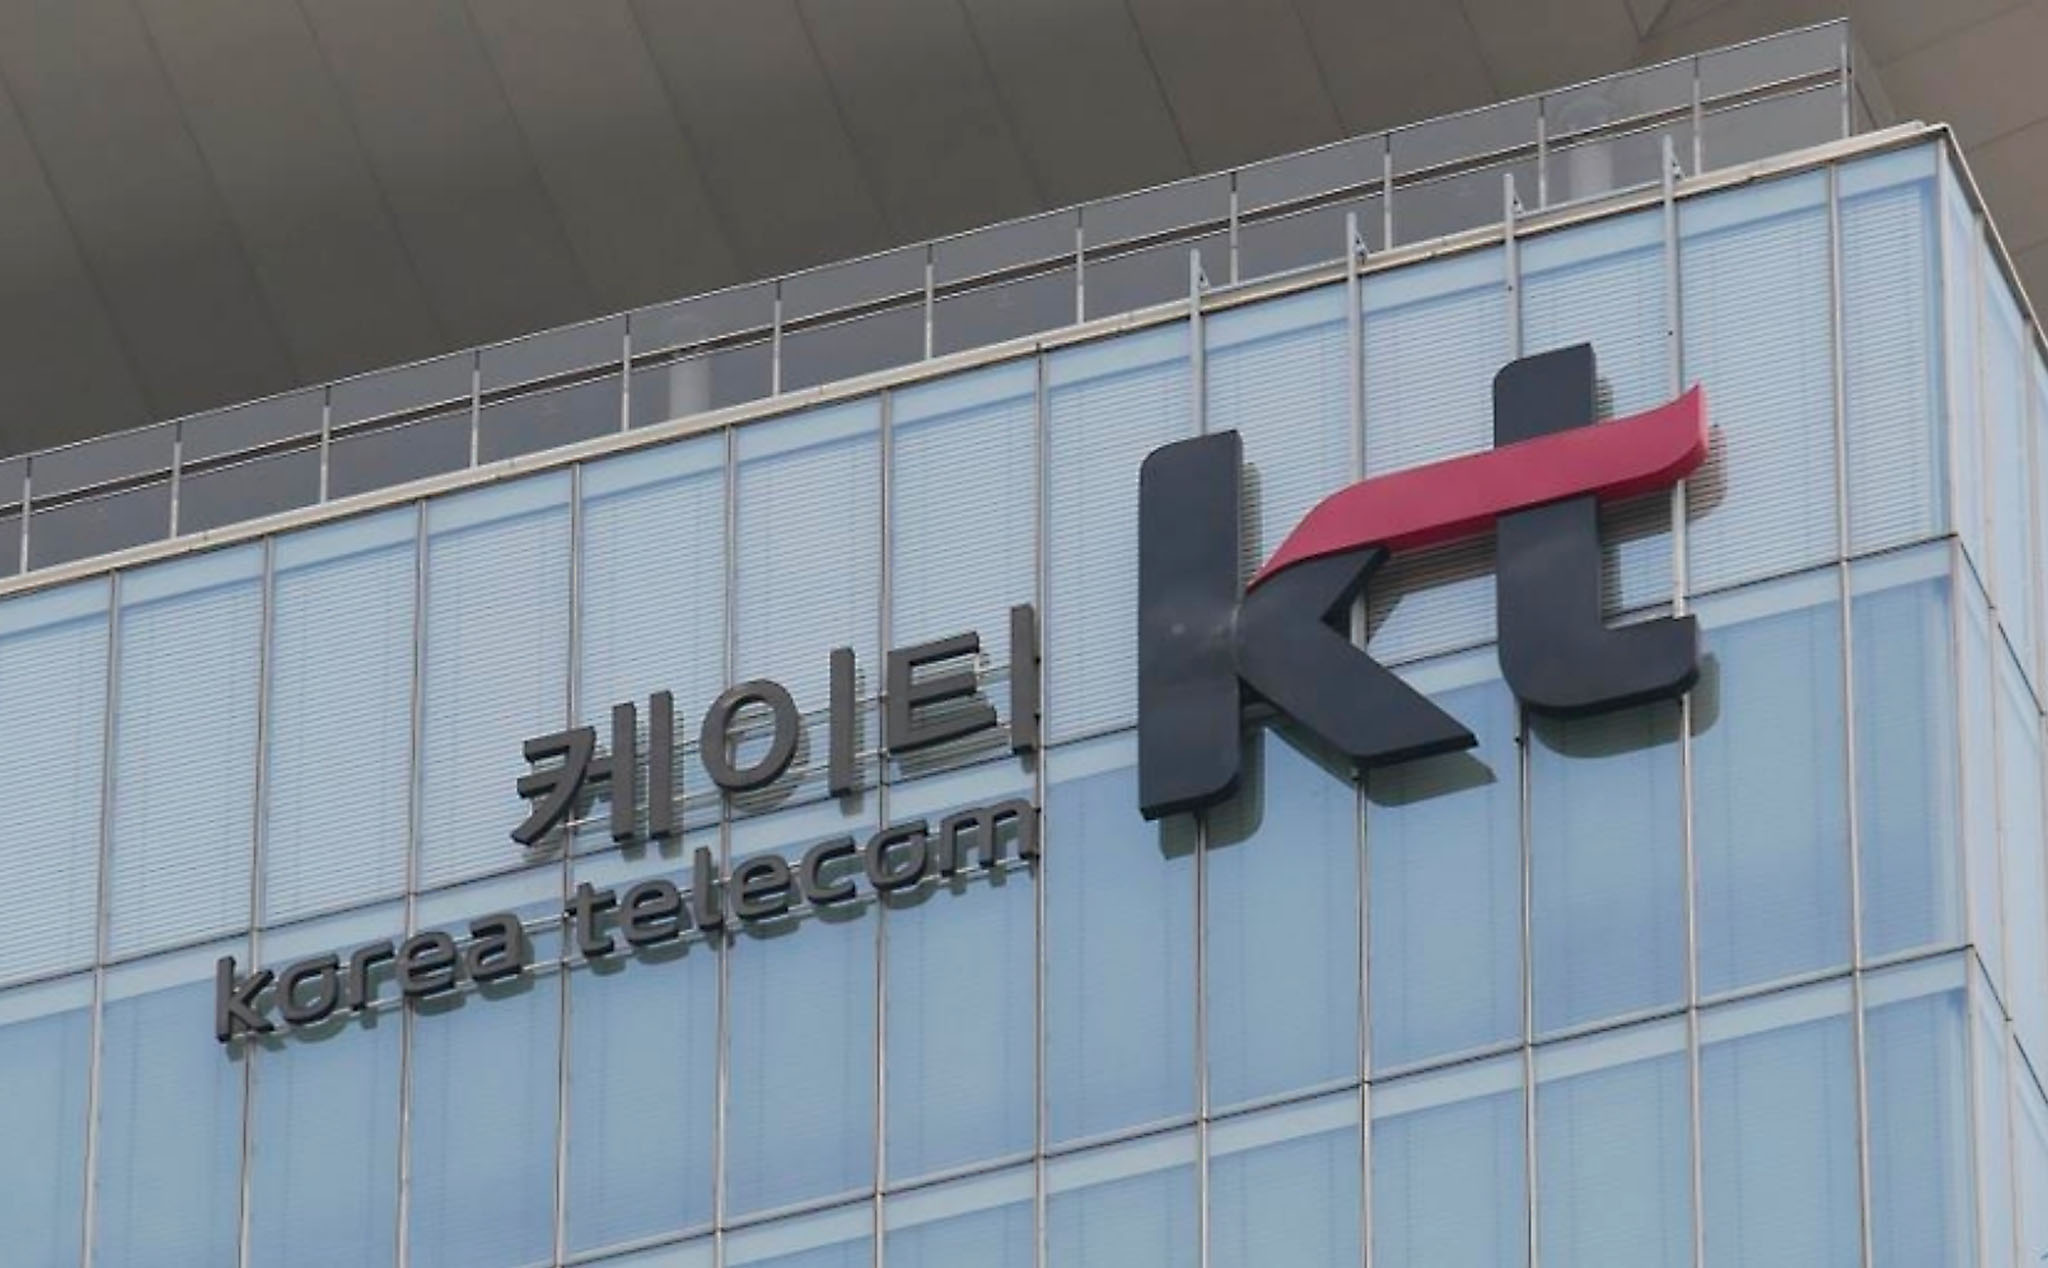 Nhà mạng Korea Telecom bị phạt 10 tỷ đồng vì mạng chậm